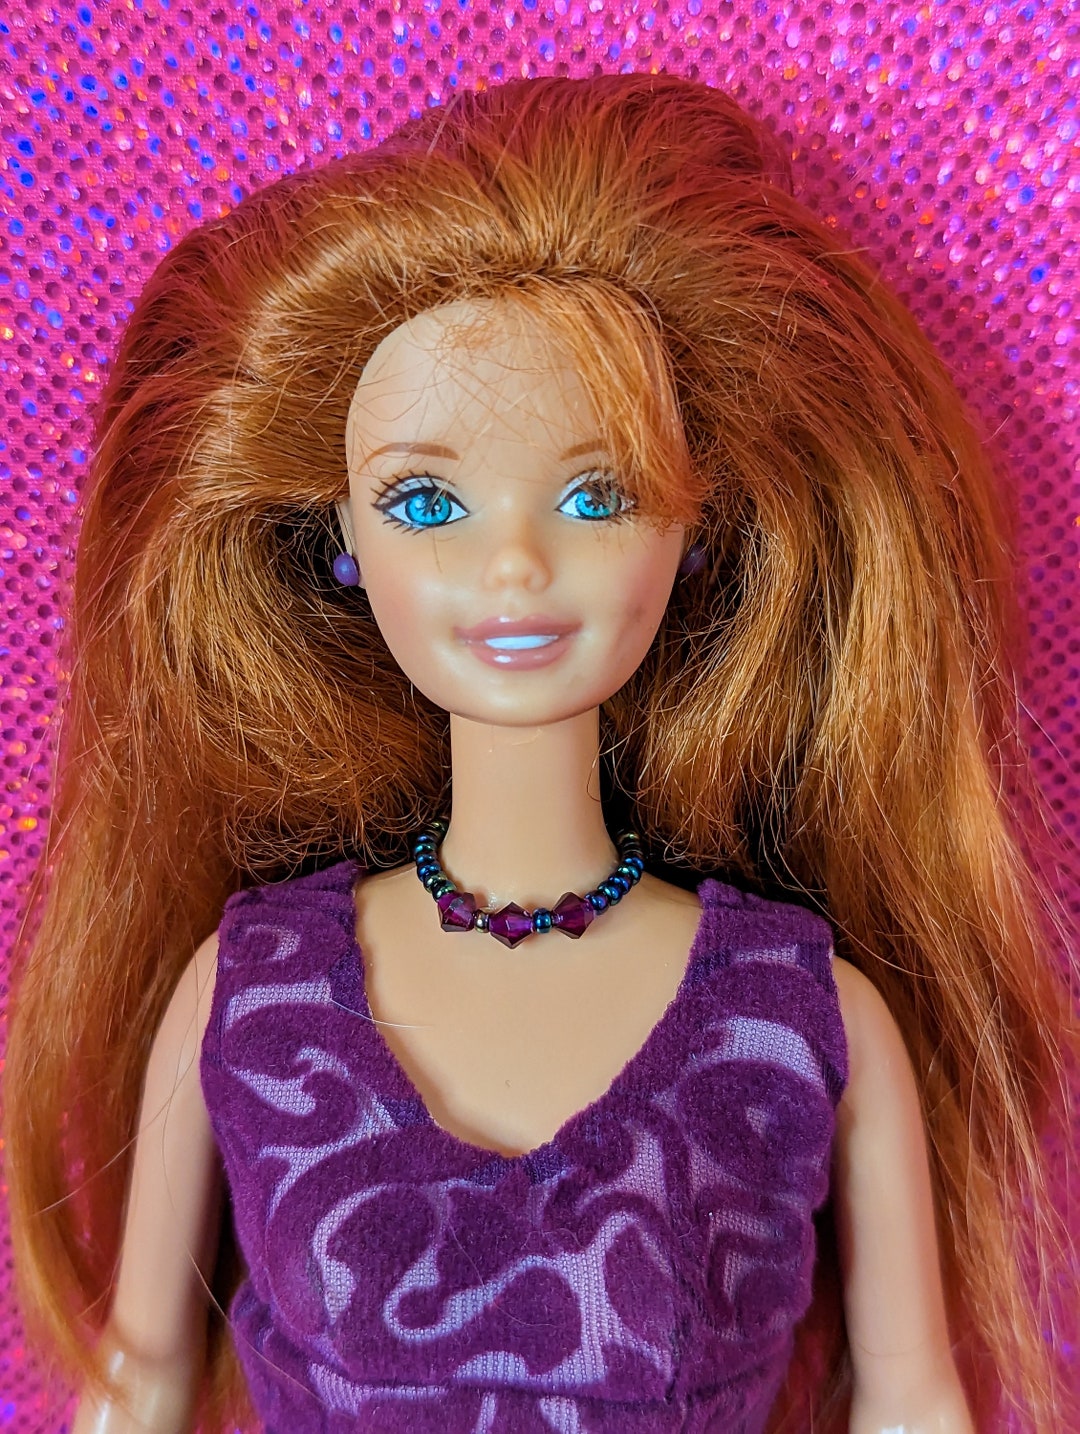 バービー Barbie Fashionista Barbie Doll Purple Dress 輸入品並行輸入品